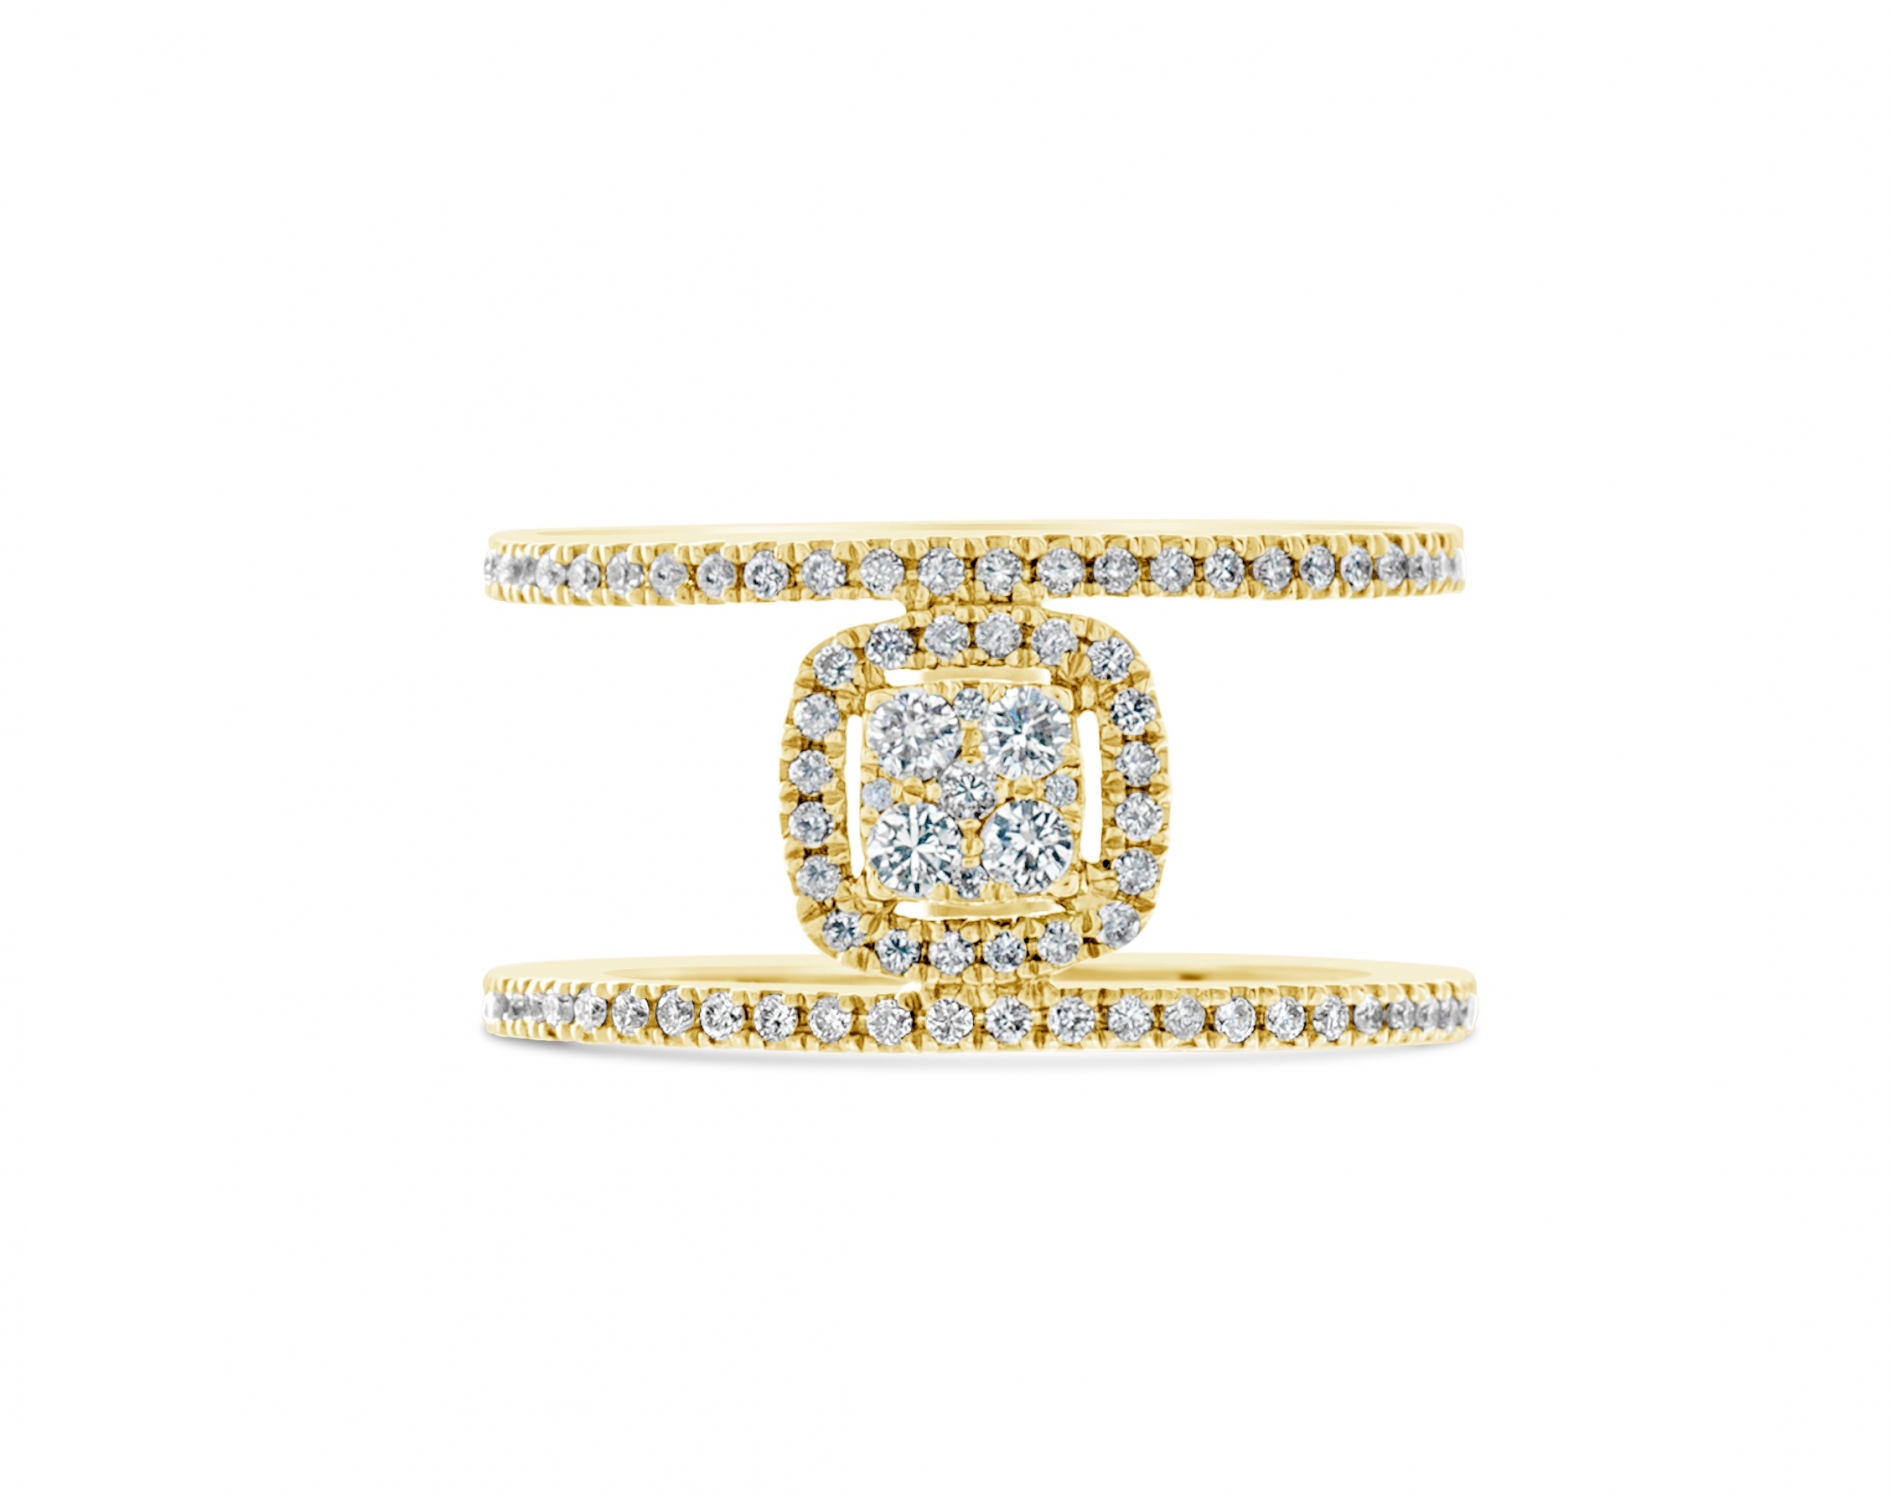 18k yellow gold halo illusion set round shaped diamond engagement ring Photos & images